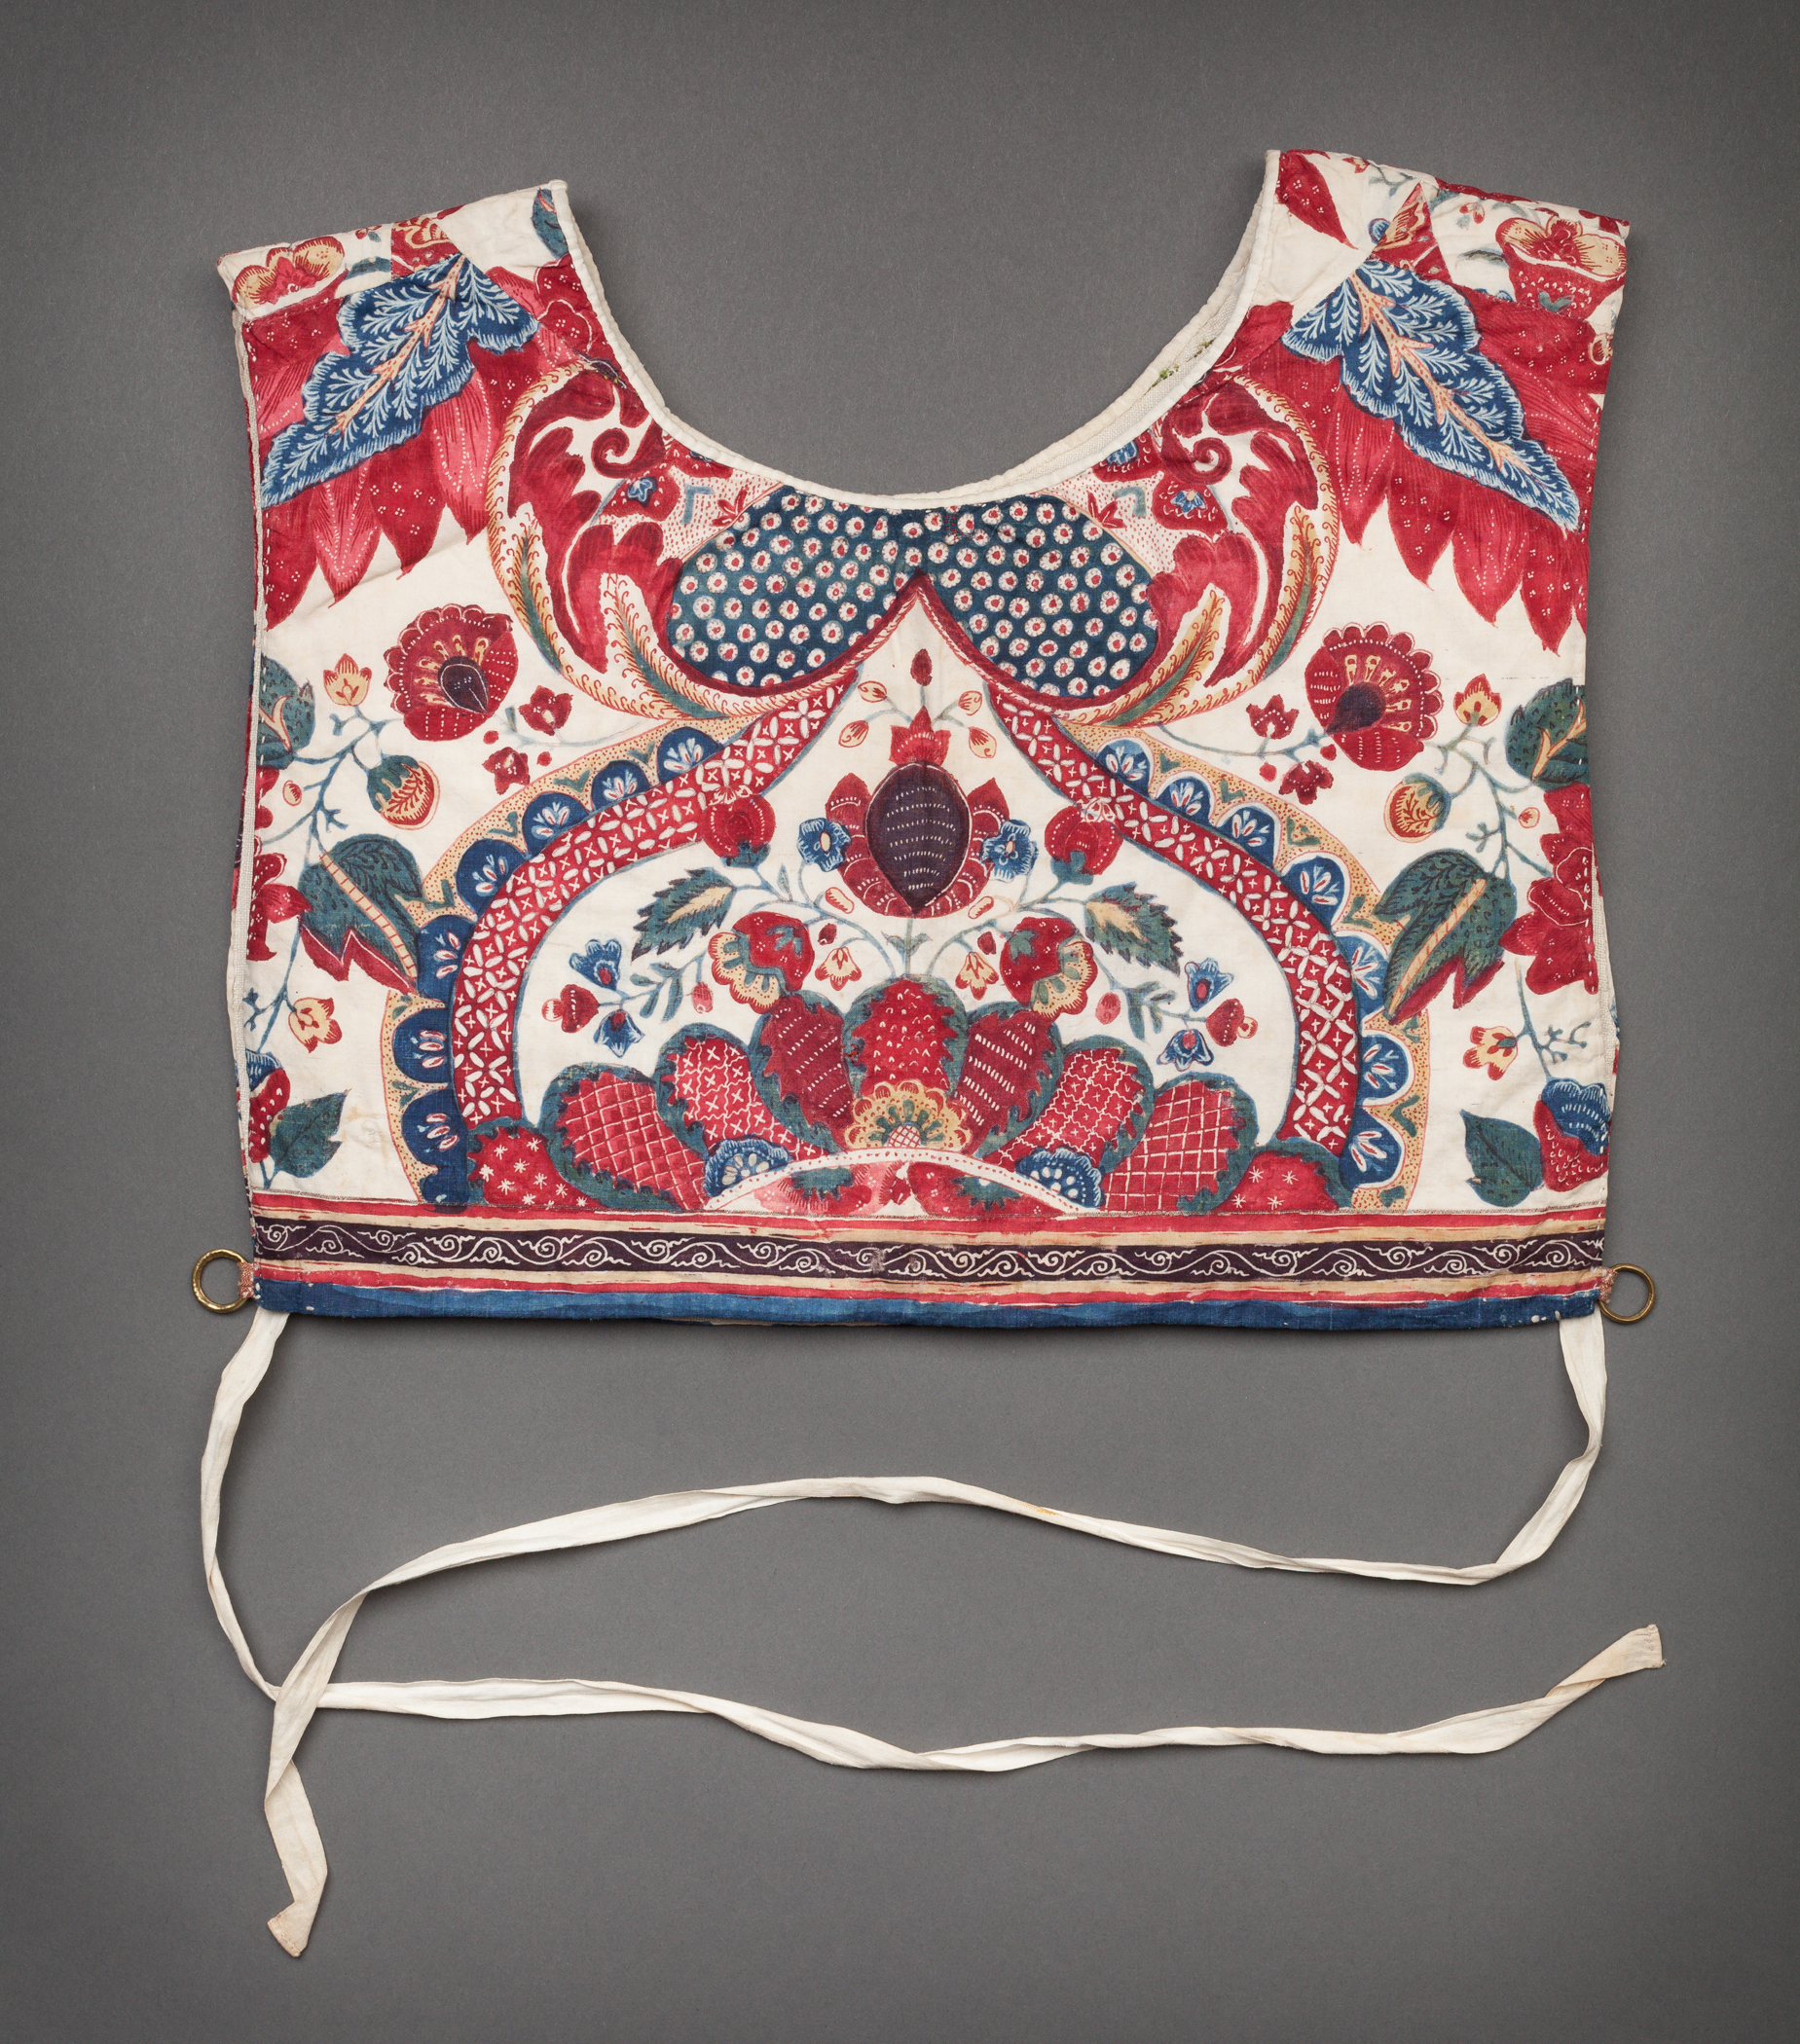 Peabody Essex Museum acquires gorgeous 18th c. Indian textile ...